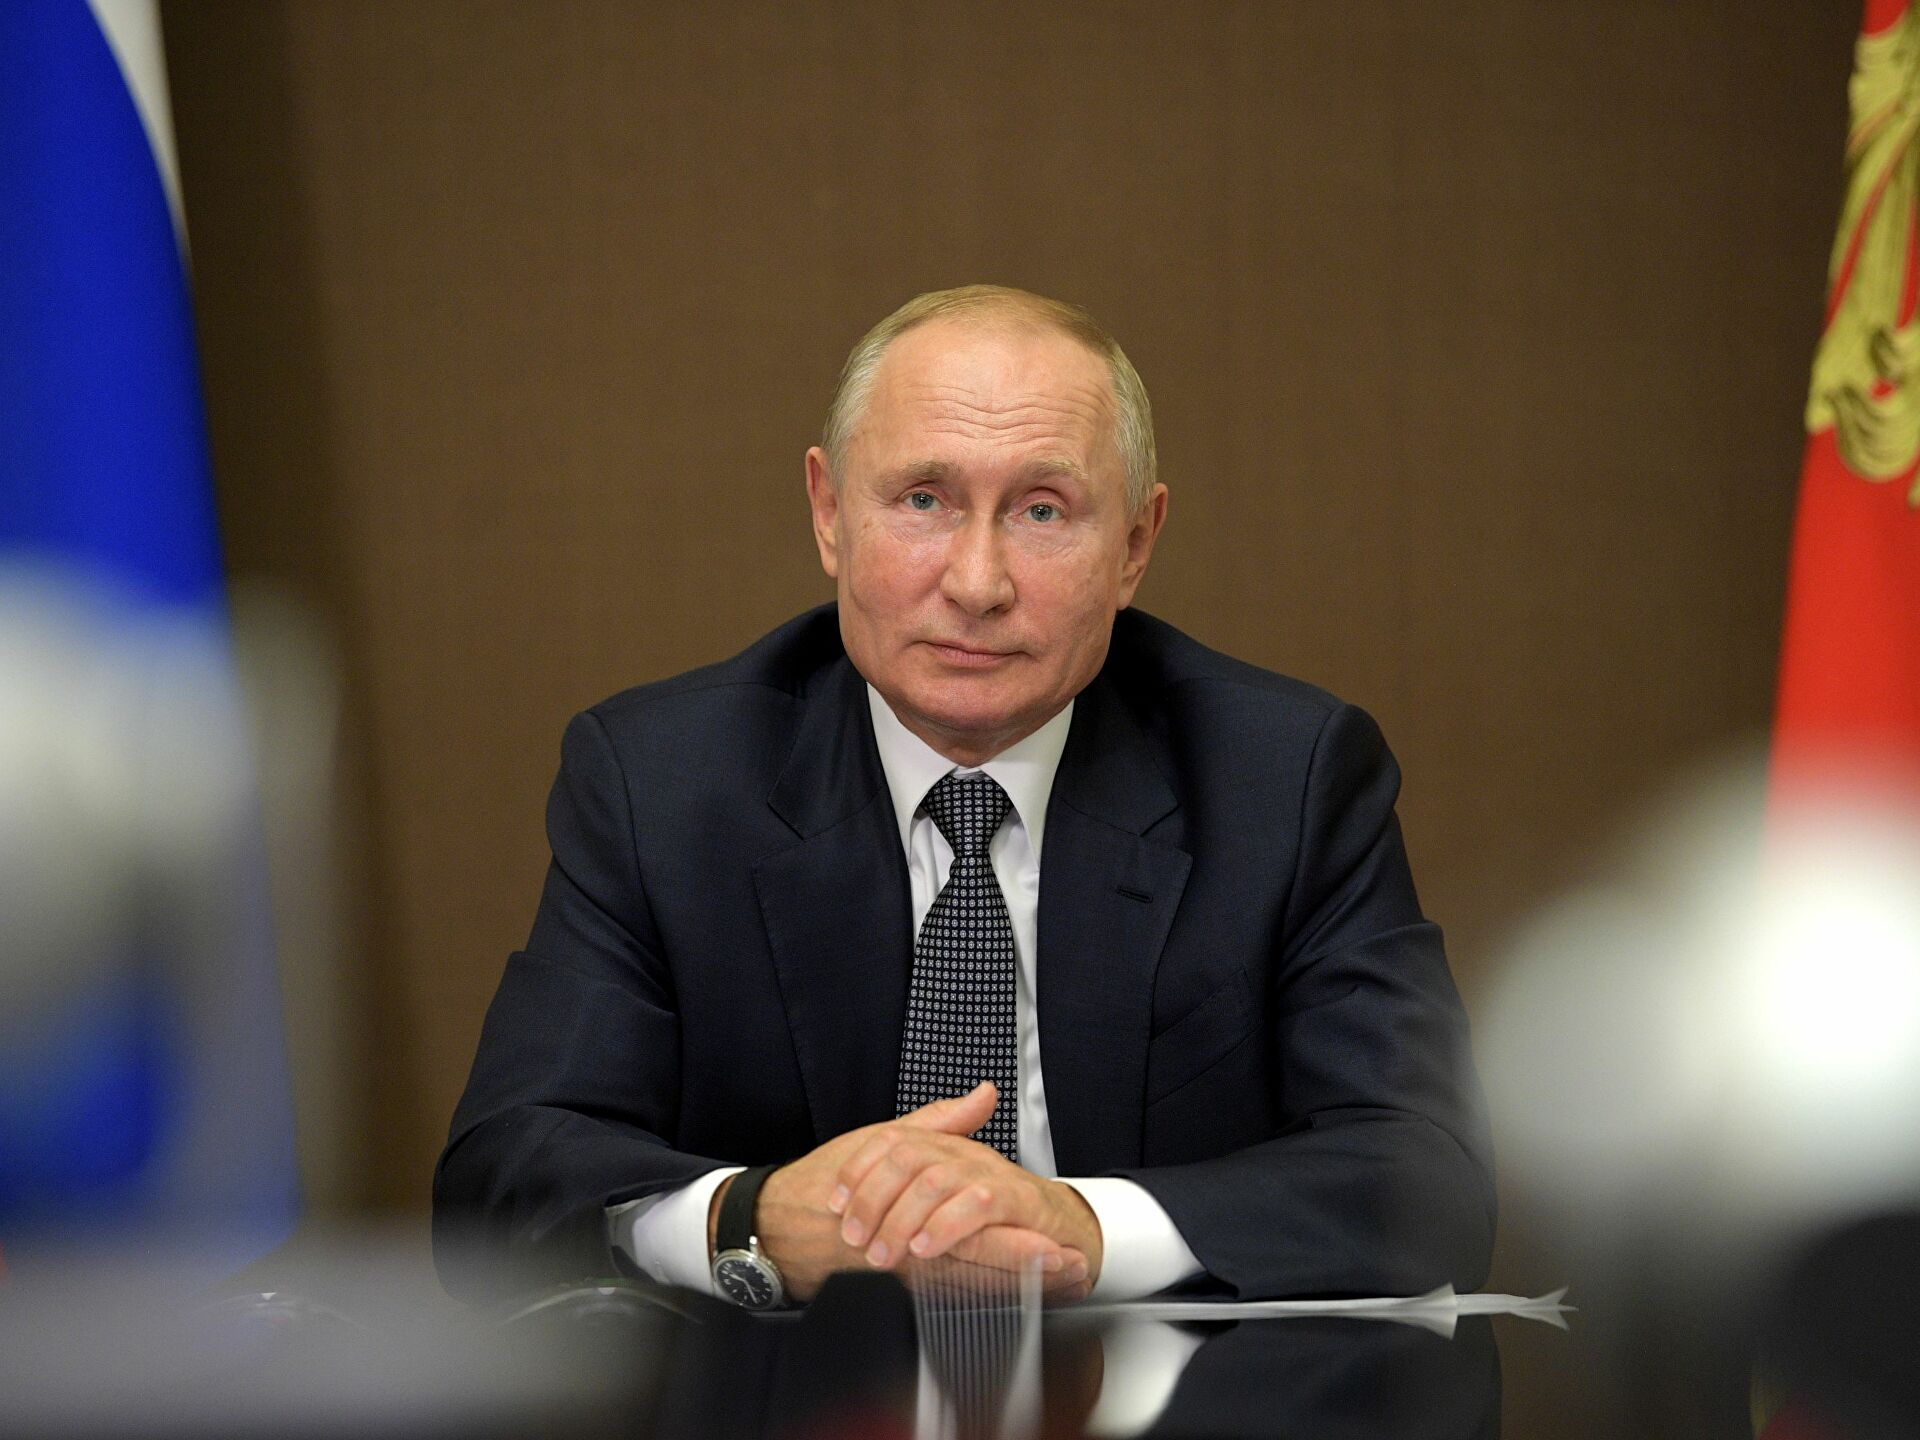 Ставка отказа. Кремль склоняет к диалогу с внешним и внутренним Западом